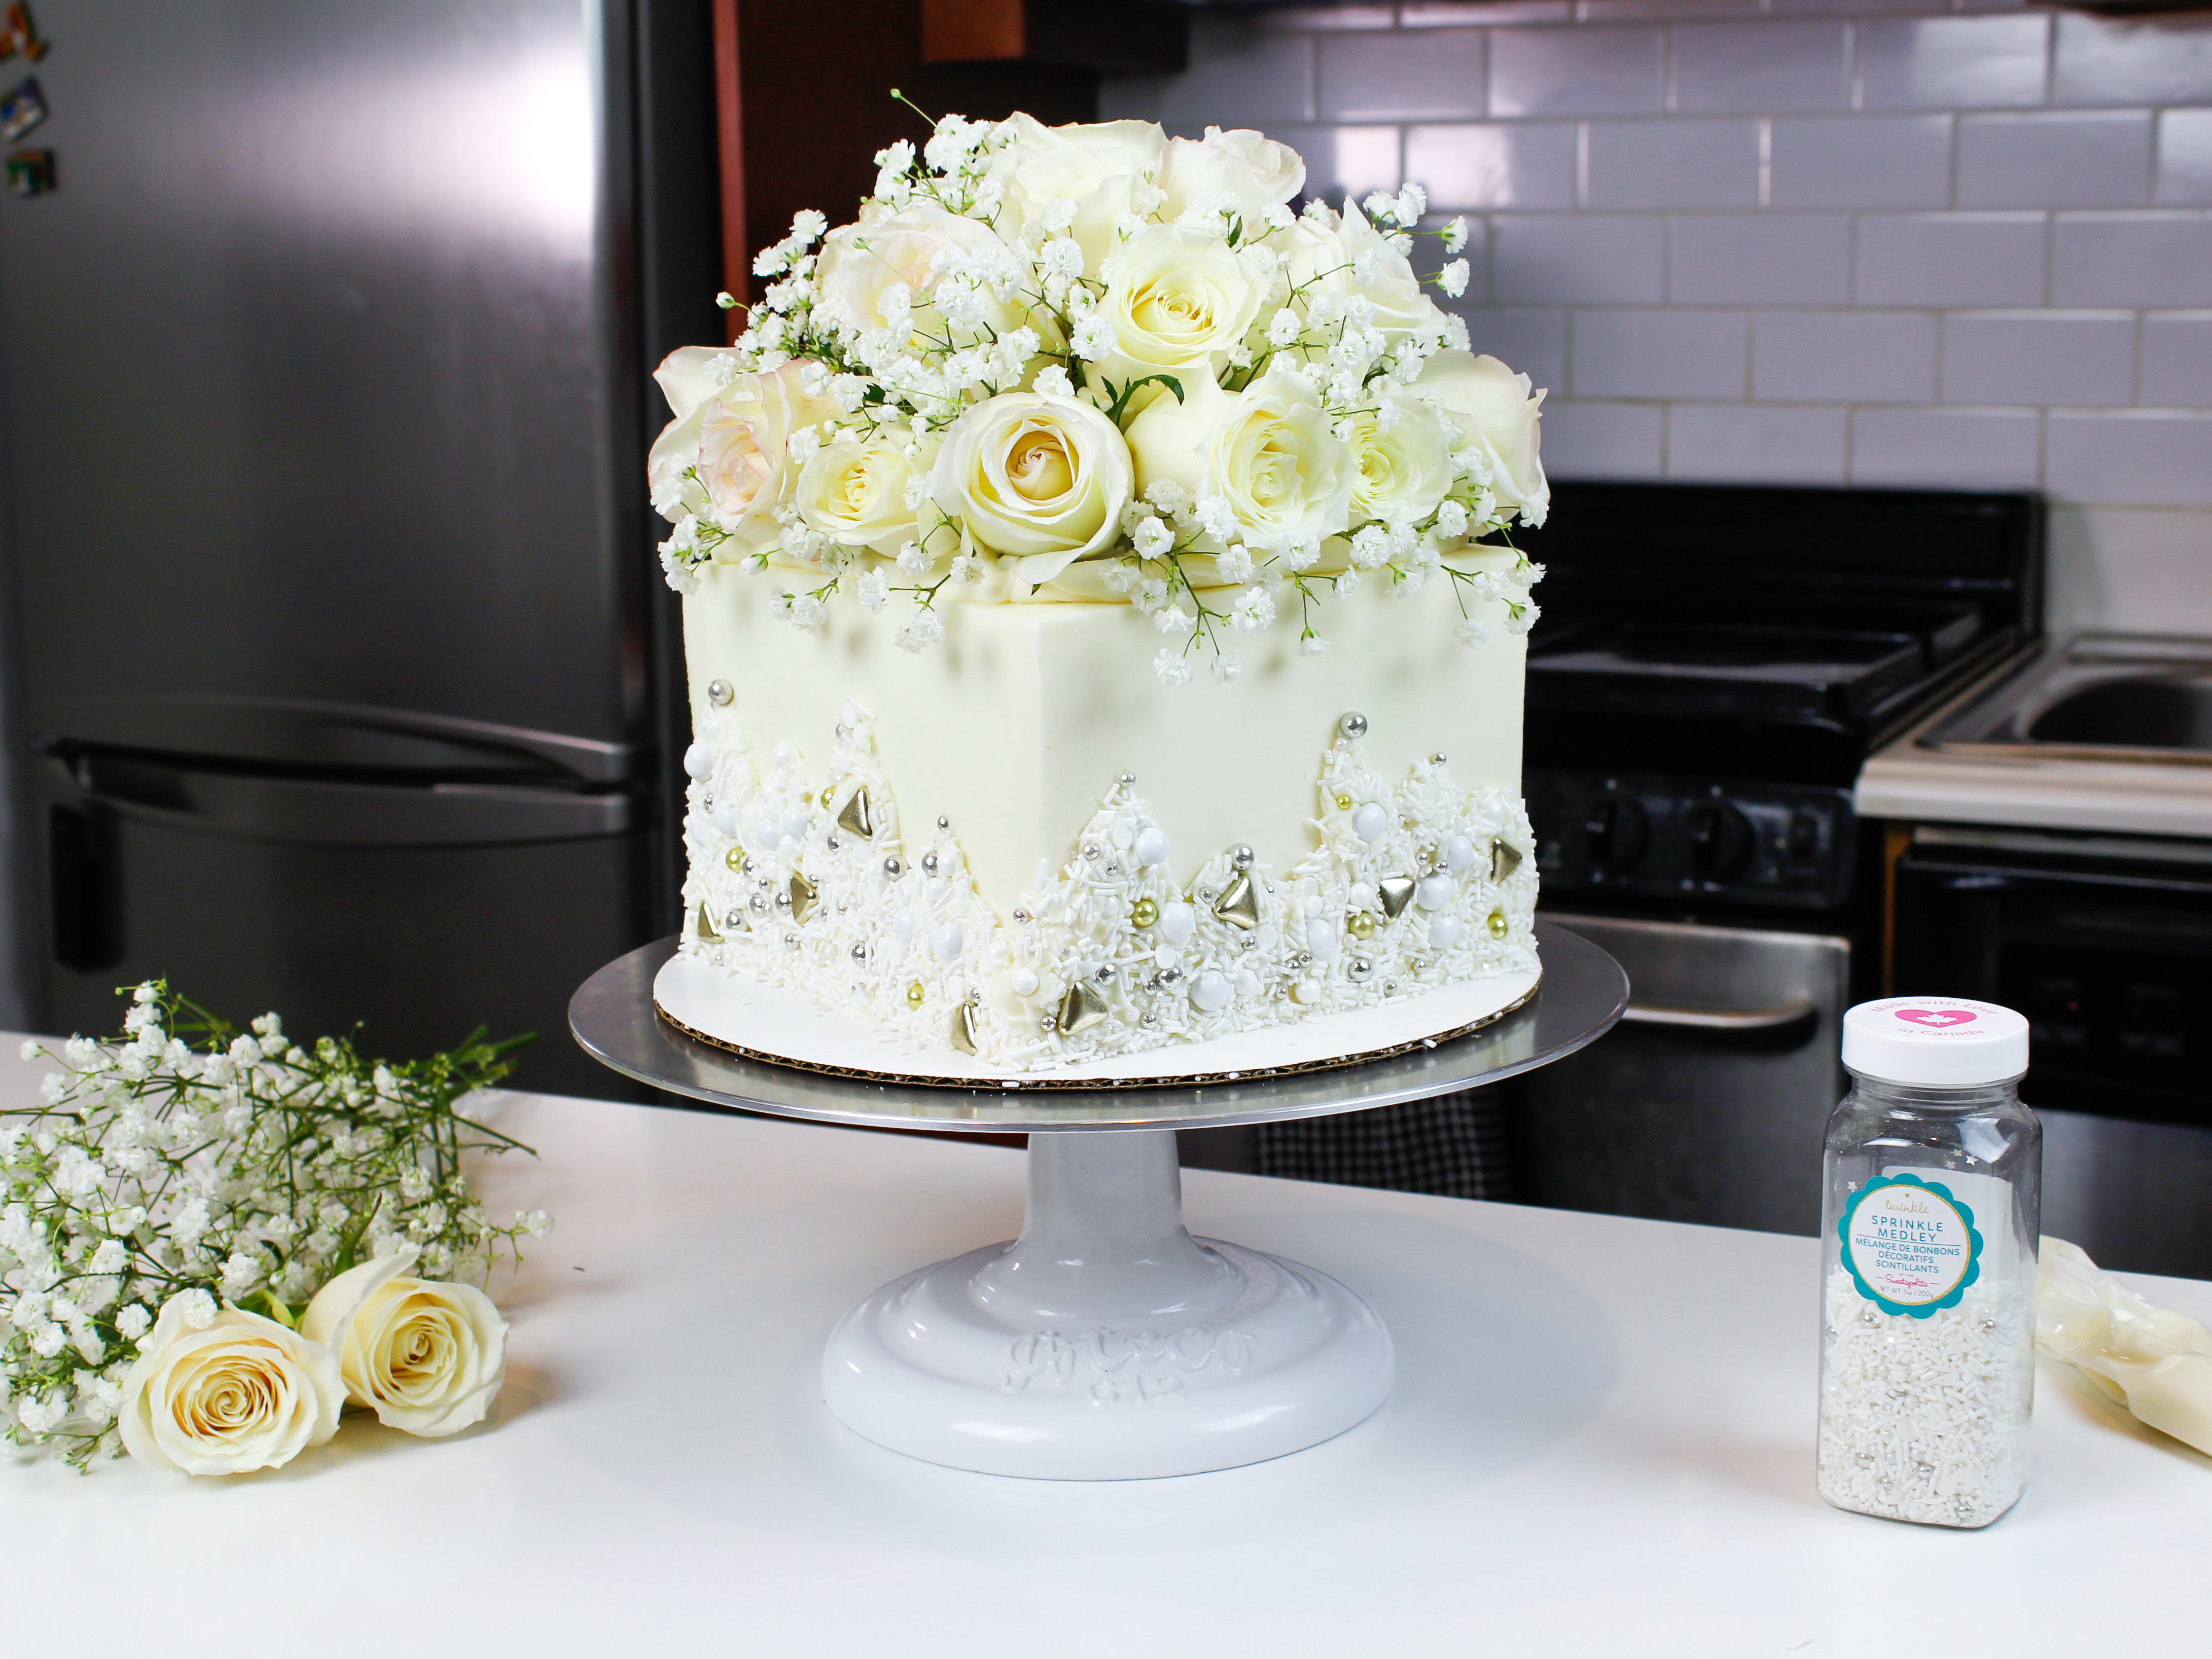 24 White Ivory Cream Rose Leaves edible wedding cake decorations 3 TONES 3 SIZES 